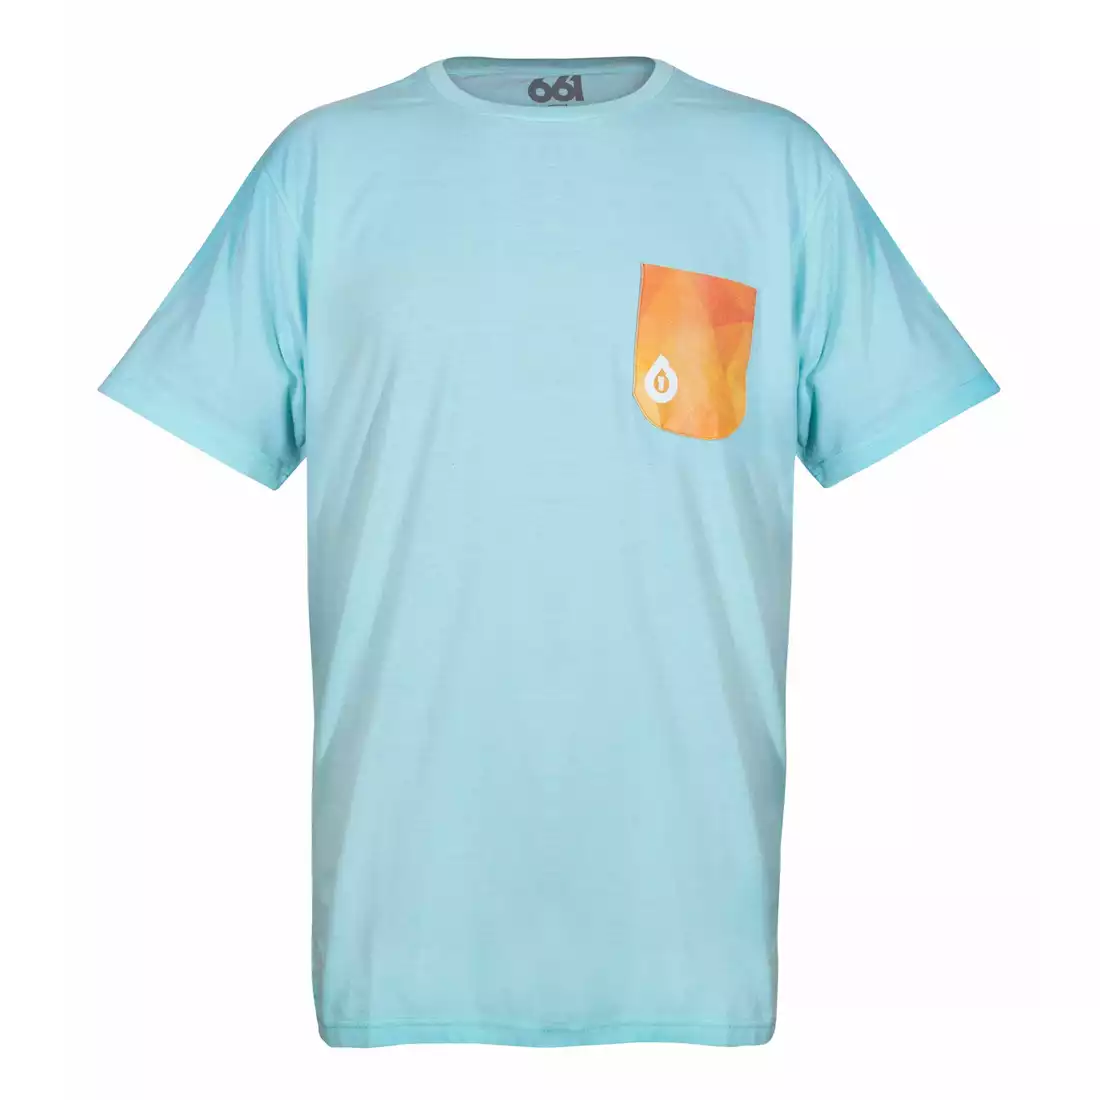 661 GEO POCKET Tee Men's T-shirt T-Shirt, blue